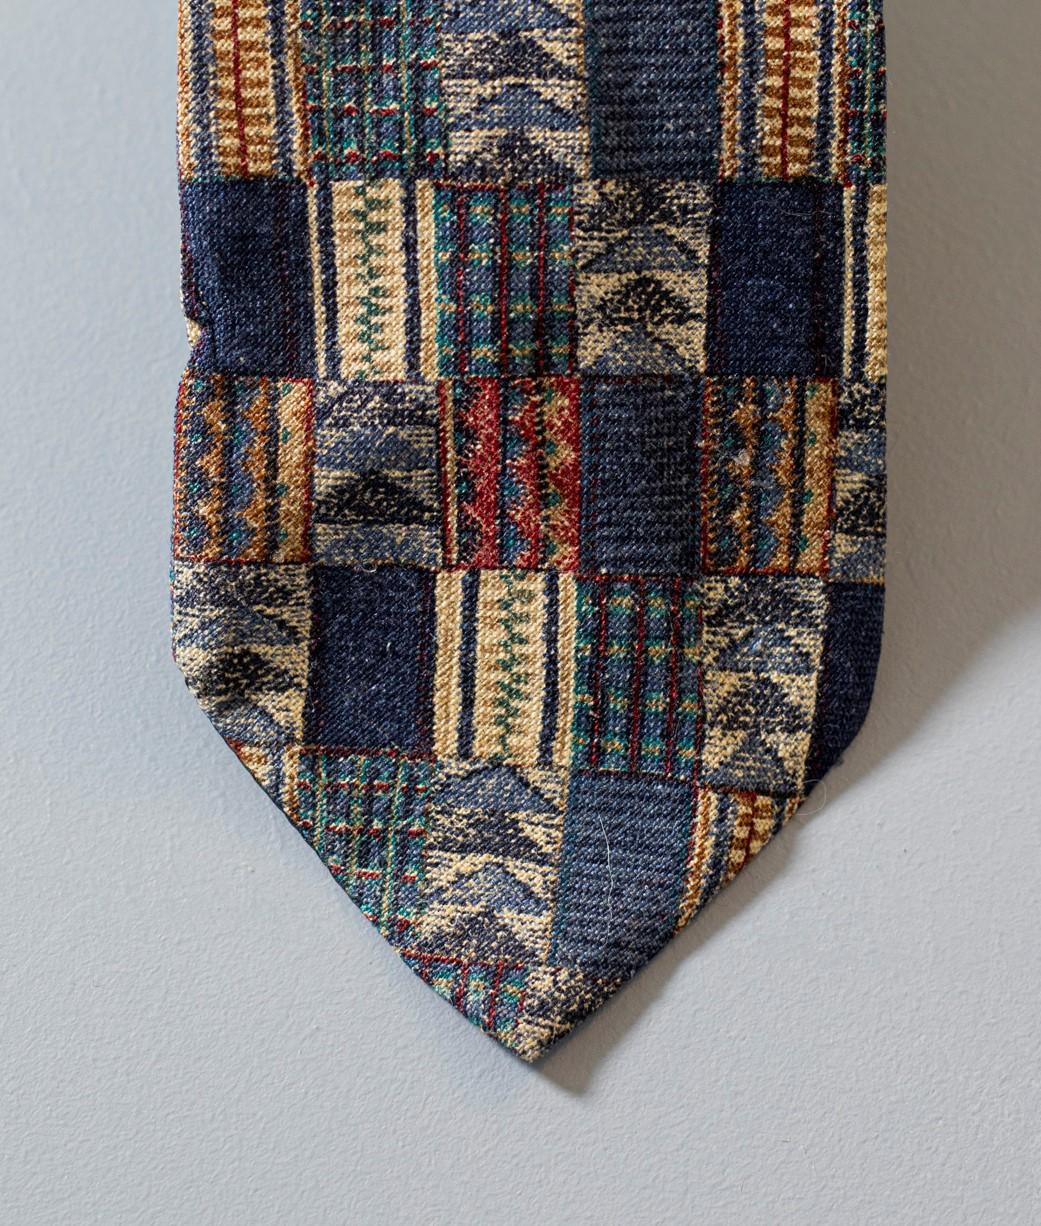 Cravate Vintage Di Alessandro, Elle est fabriquée en 100% soie, ce qui explique sa douceur et sa qualité. Décorée de petits carrés aux motifs différents. Si vous ne savez pas quoi porter pour une soirée d'hiver entre amis, c'est l'accessoire qu'il